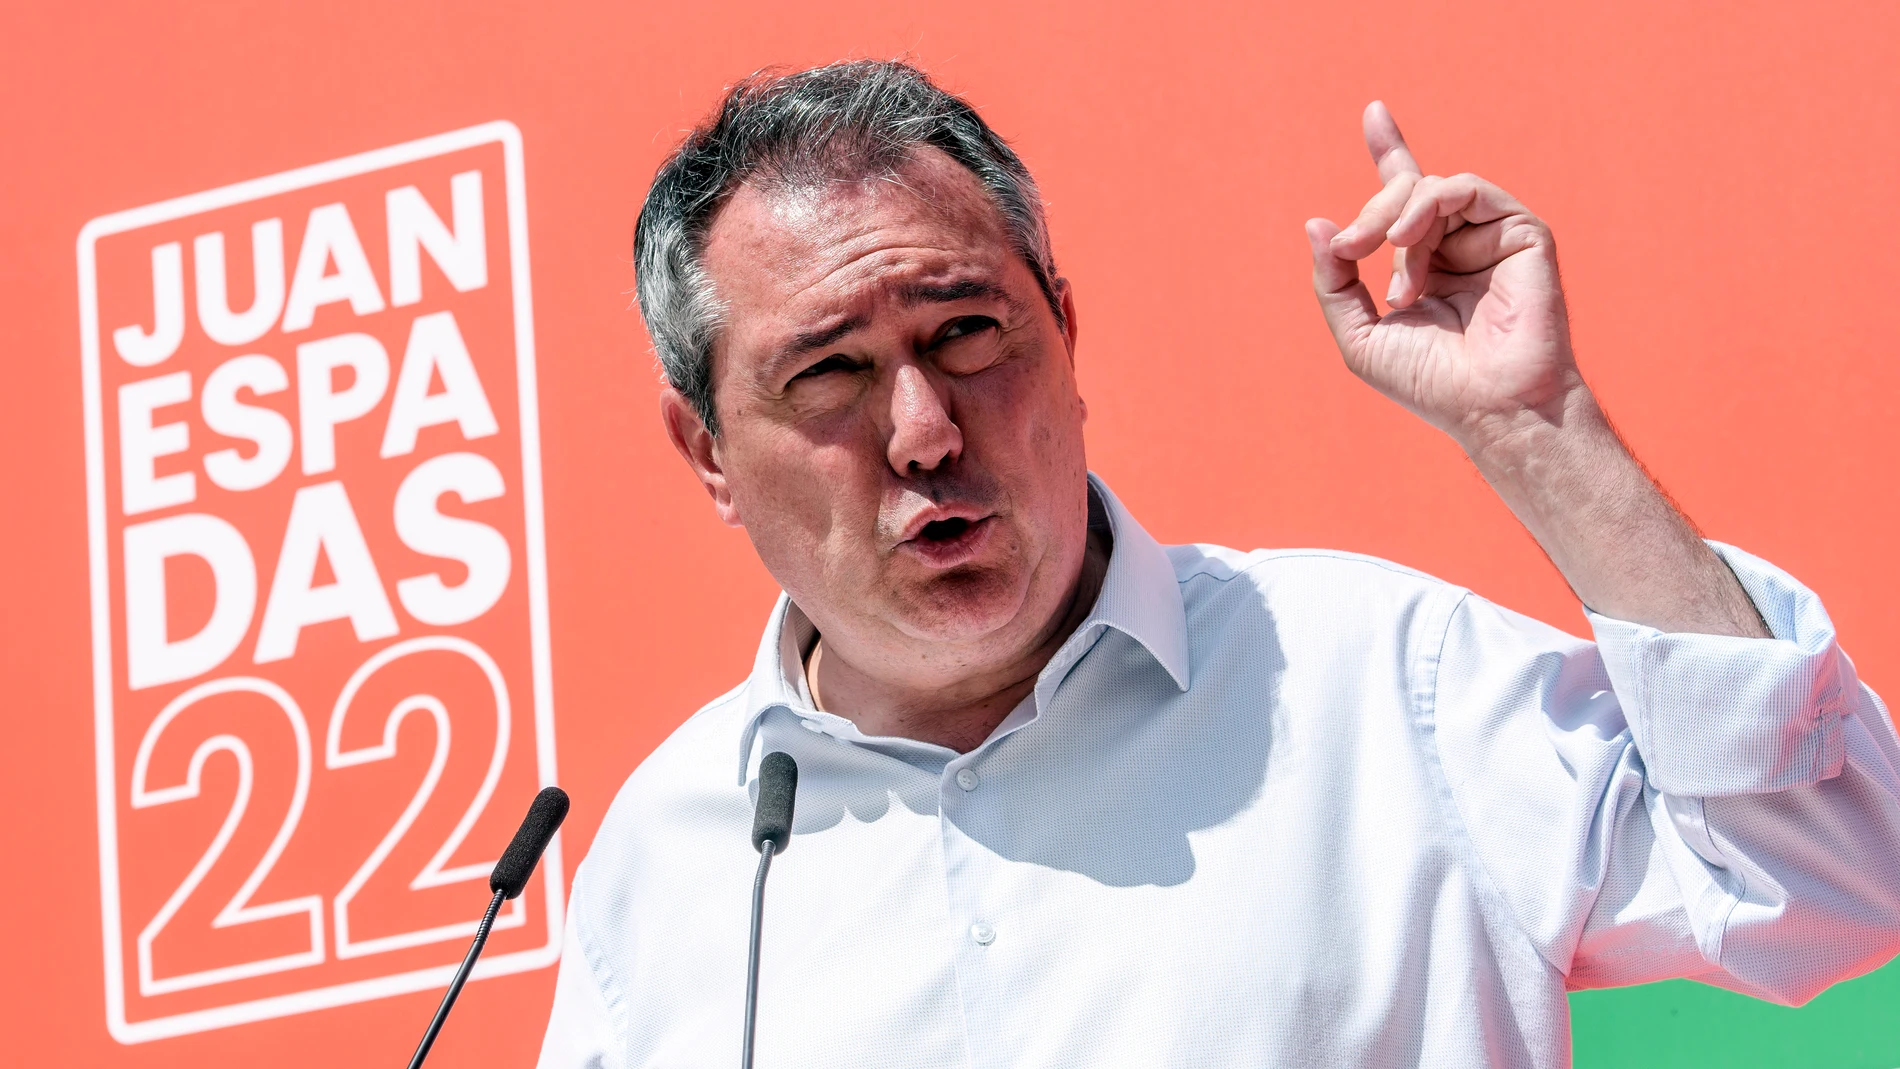 El candidato del PSOE a la Junta, Juan Espadas, ha defendido el "orgullo y los avances" de los gobiernos socialistas durante sus 37 años de gestión al frente de la Junta. EFE/ Raúl Caro.